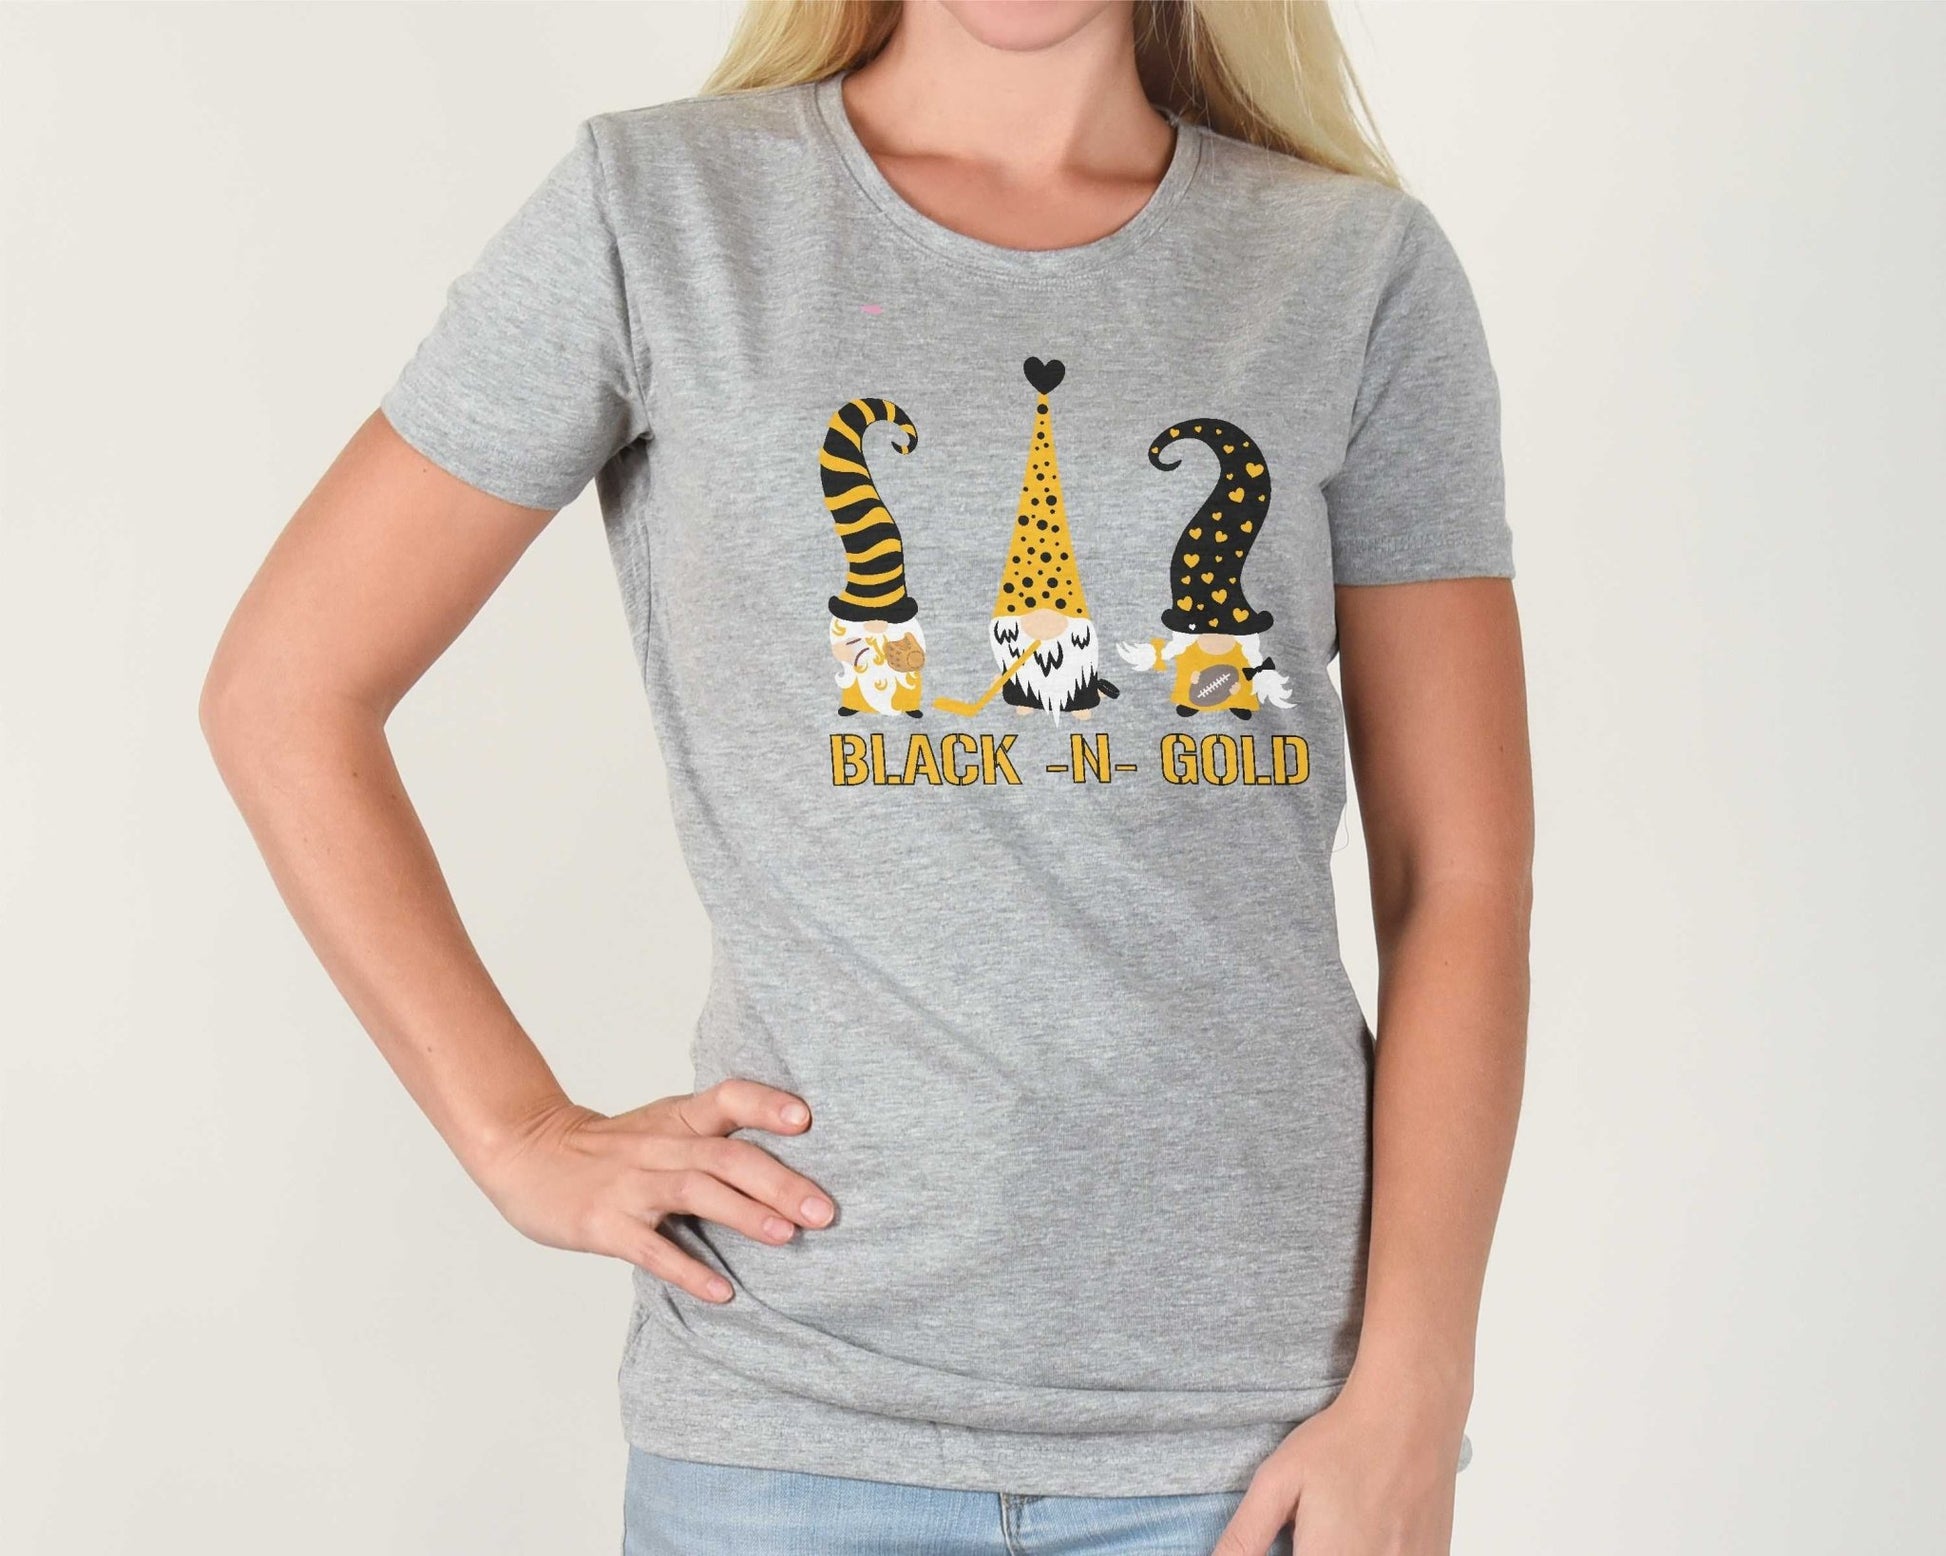 Pittsburgh Sports Gnomes shirt, Football Hockey Baseball Gnome Shirt, Pirates Tshirt, Penguins Top, Black and Gold Gnome Tee - SBS T Shop